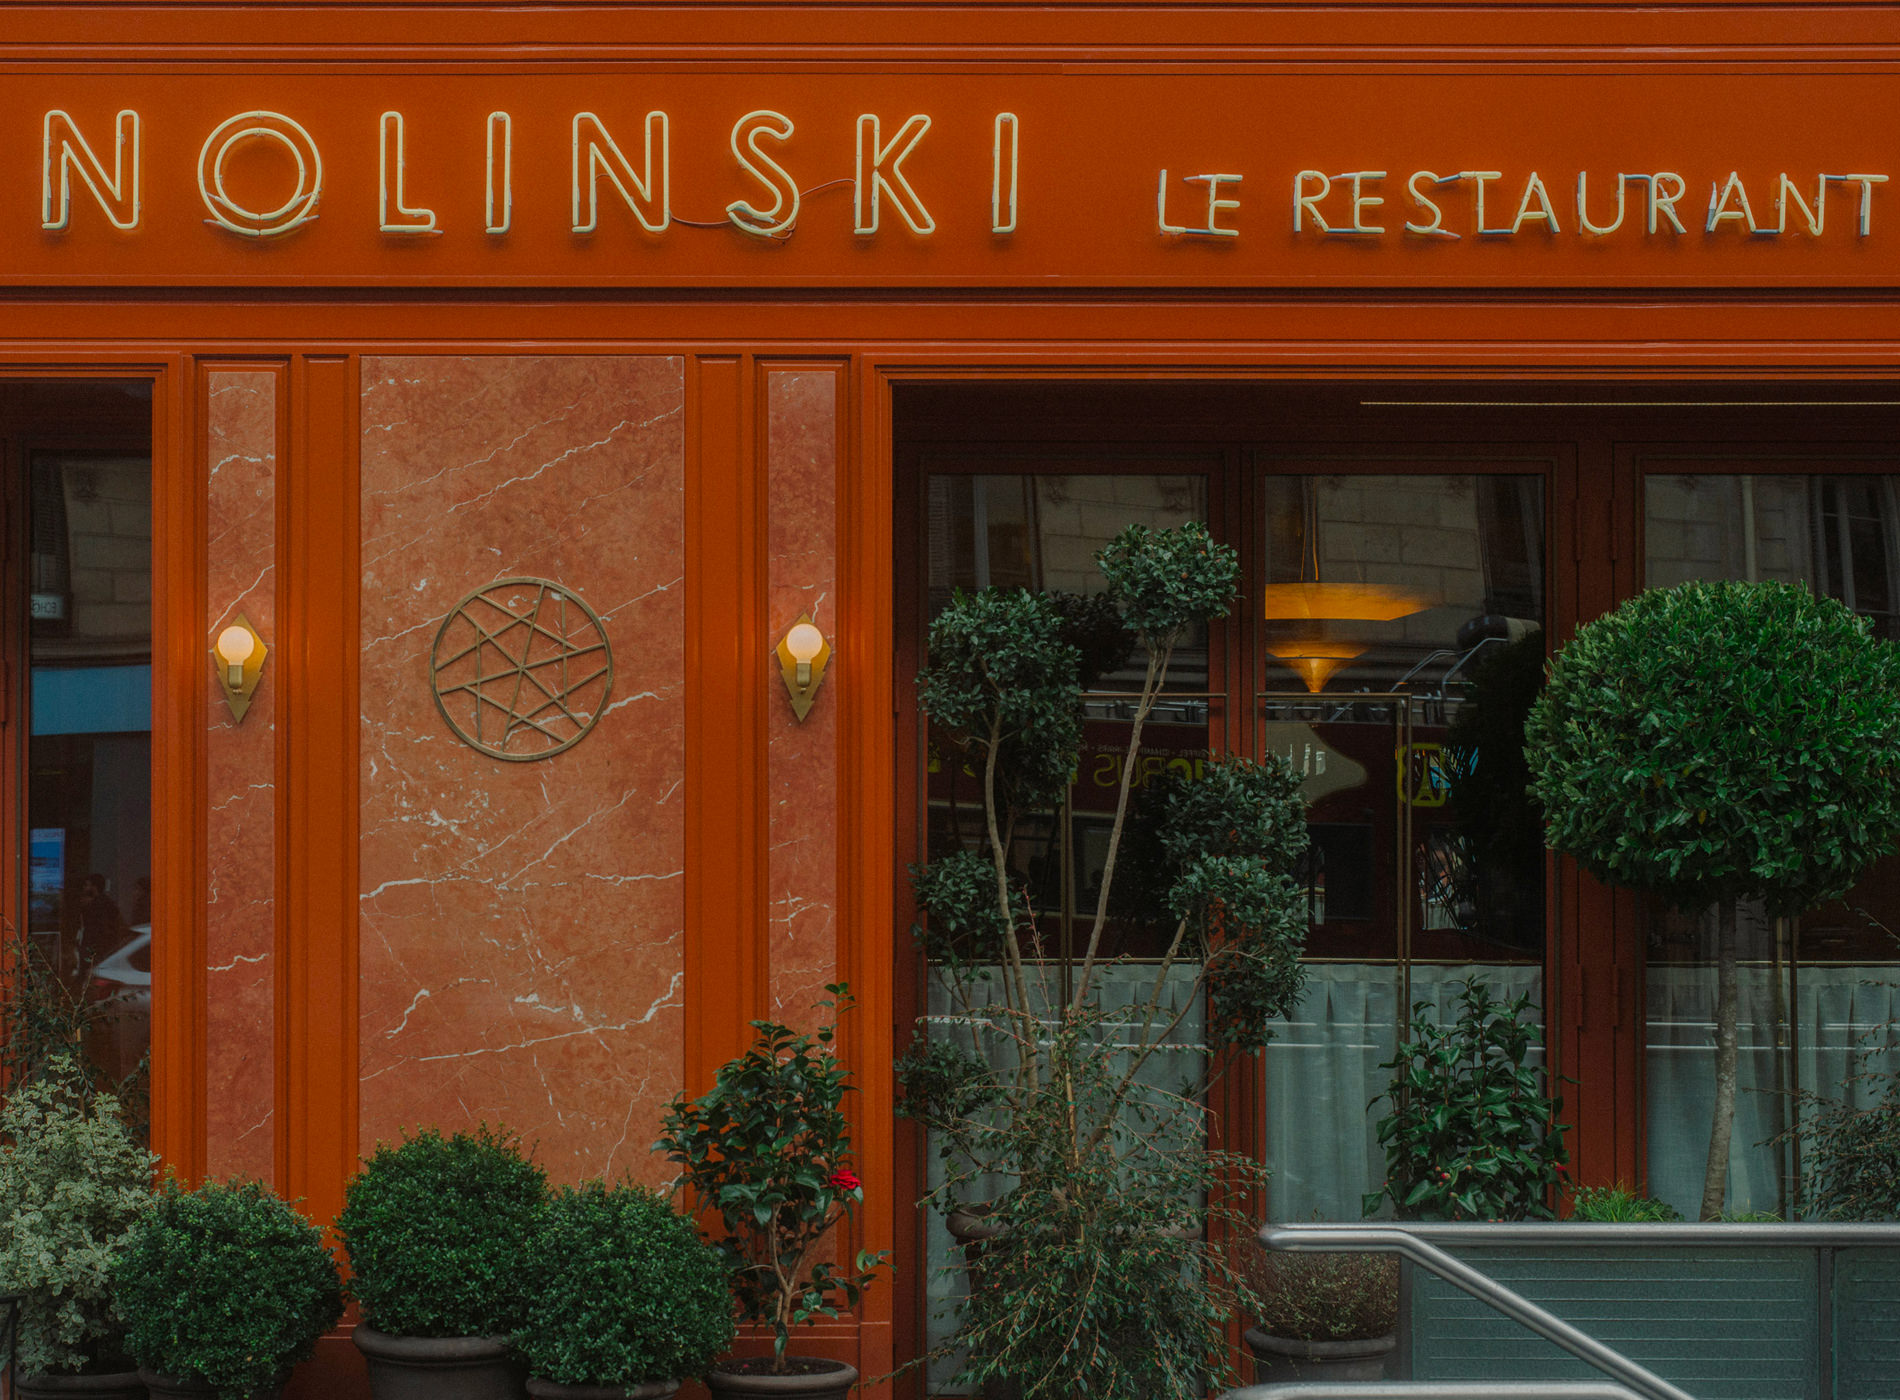 City Guide Paris. Nolinski Le Restaurant — Avenue de l'Opéra, 1er Arrondissement